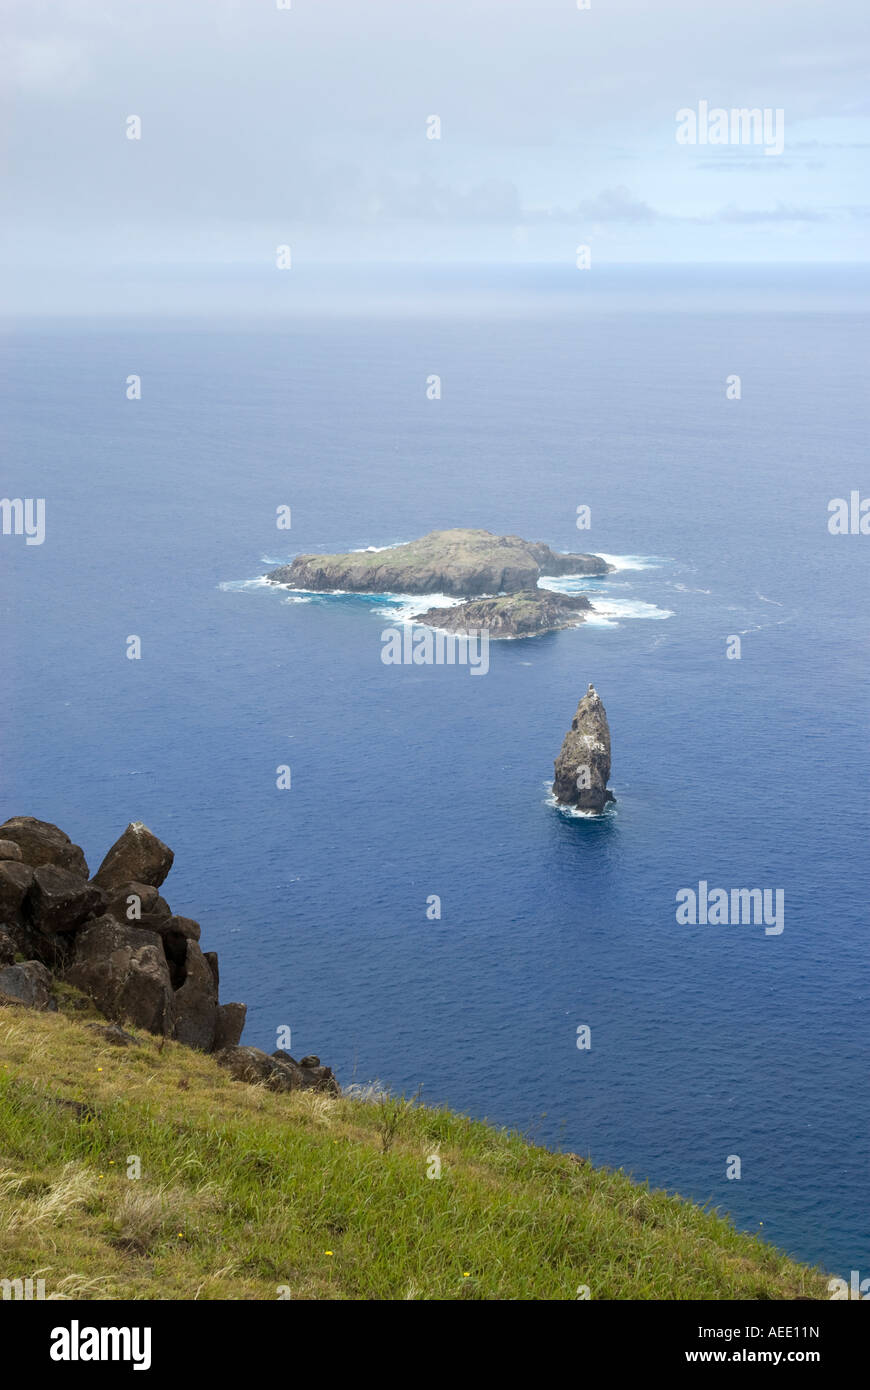 Gli isolotti di Motu Nui e Motu Iti fuori della costa dell'Isola di Pasqua nell'Oceano Pacifico. Foto Stock